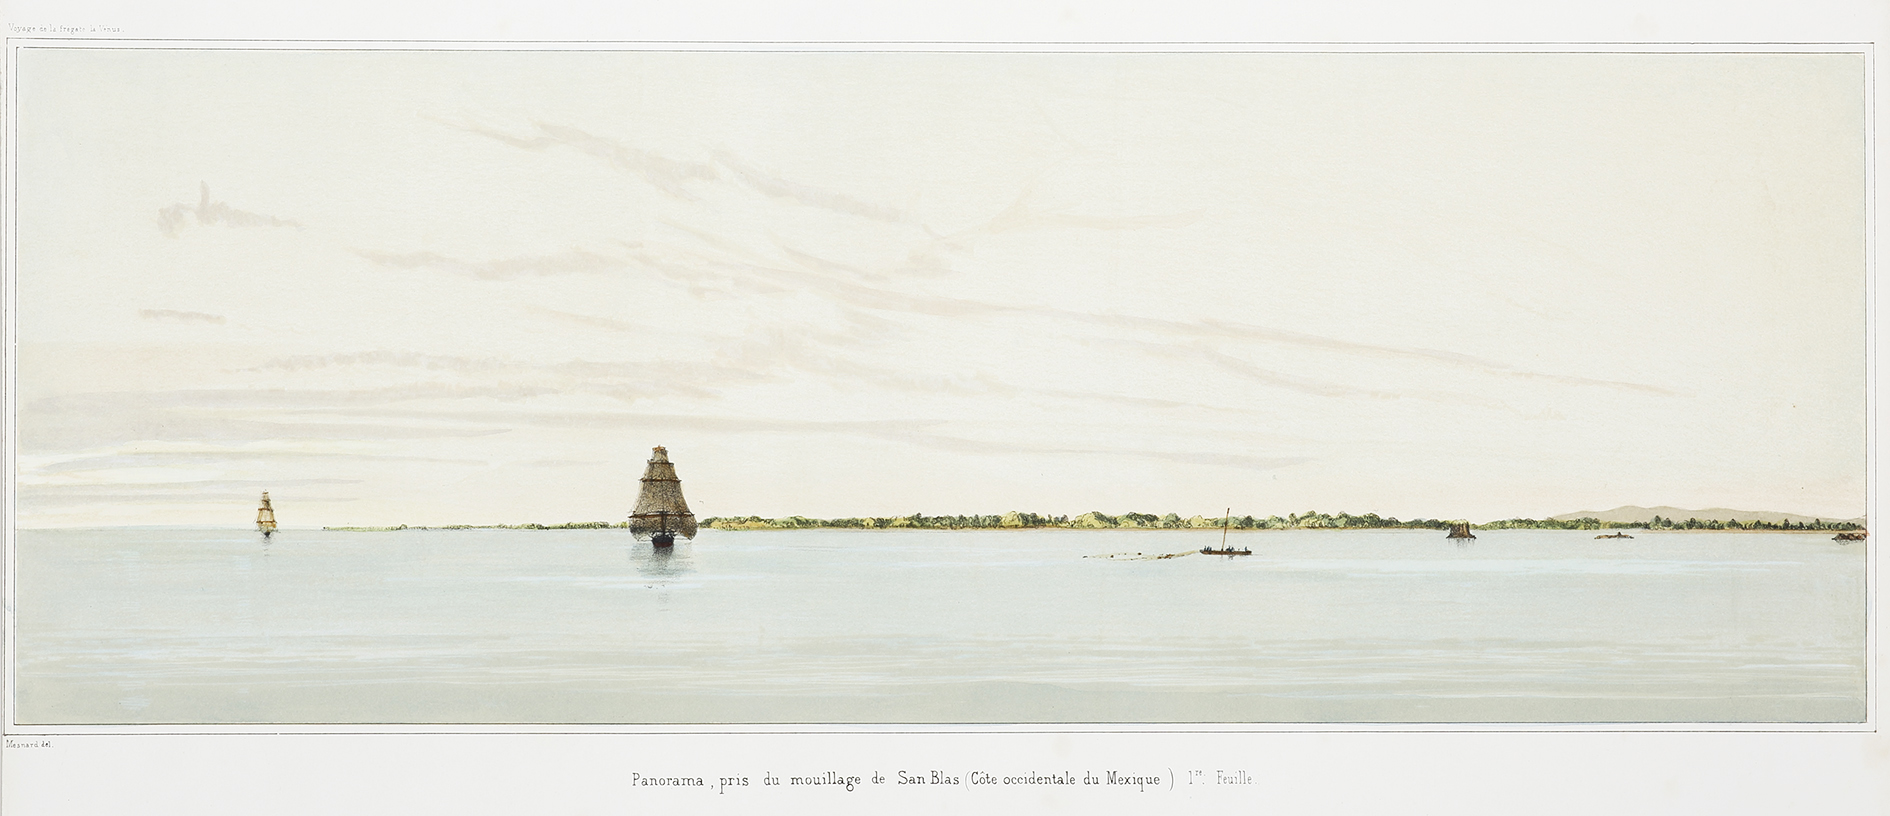 MEXICO-Panorama, pris au mouillage de San Blas (Cote occidentale du Mexique) (1re. Feuille) & (2me.Feuille) (3me. Feuille) & (4me.Feuille) - Antique View from 1841